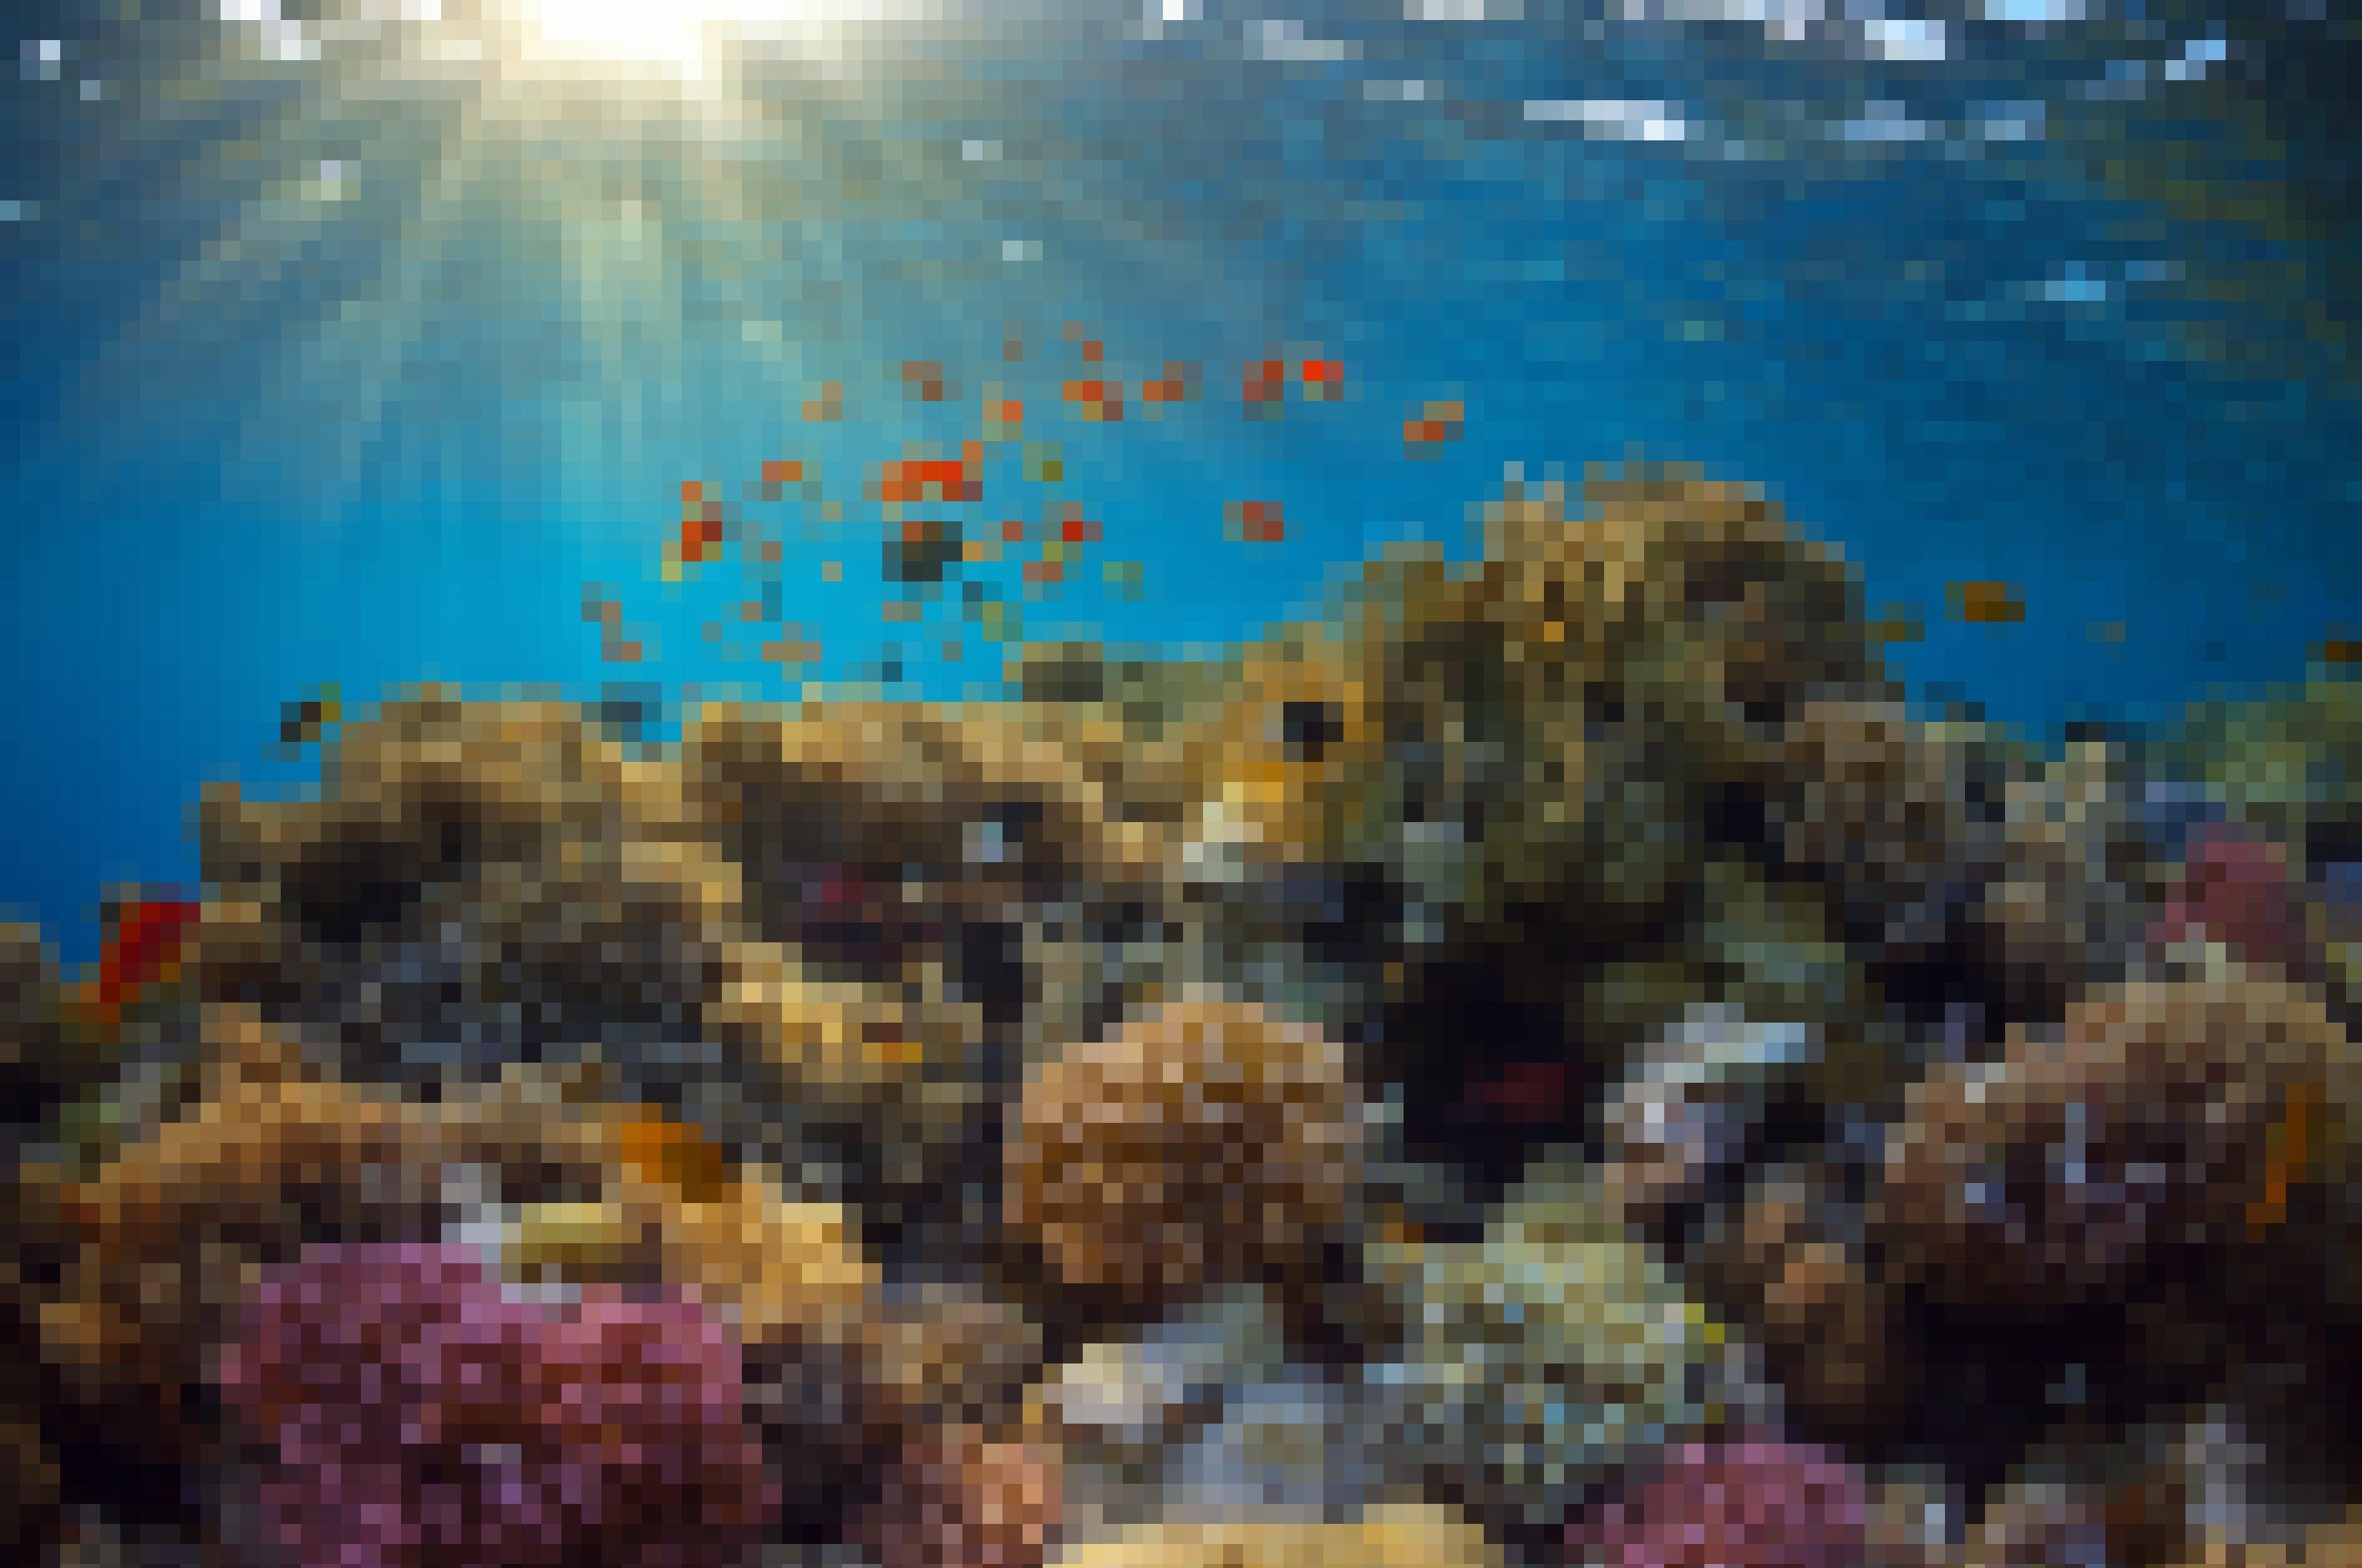 Ein artenreiches Korallenriff mit vielen bunten Fischen